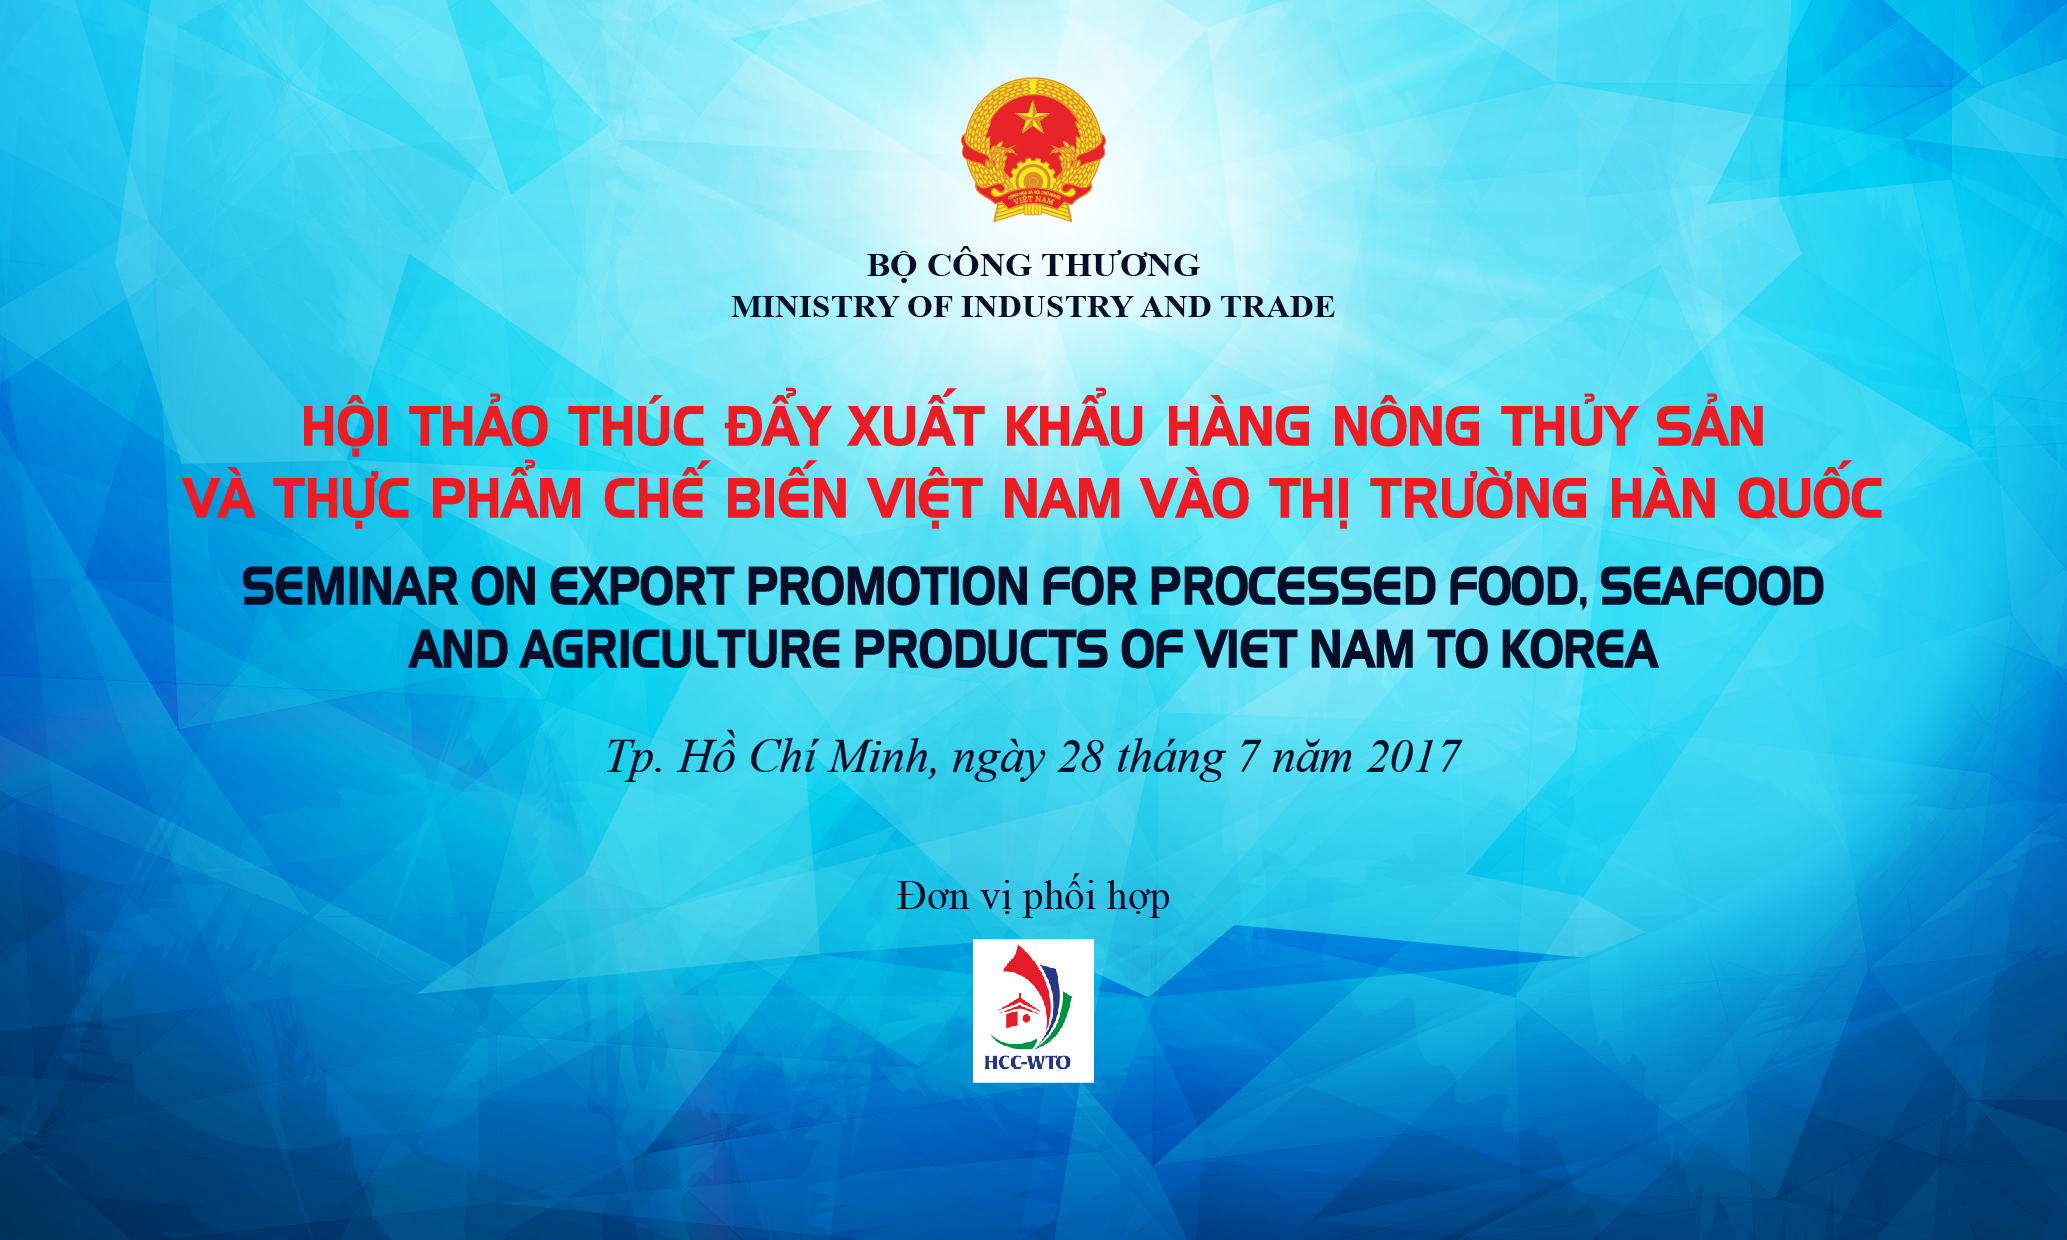 Hội thảo thúc đẩy xuất khẩu nông thủy sản và thực phẩm vào thị trường Hàn Quốc